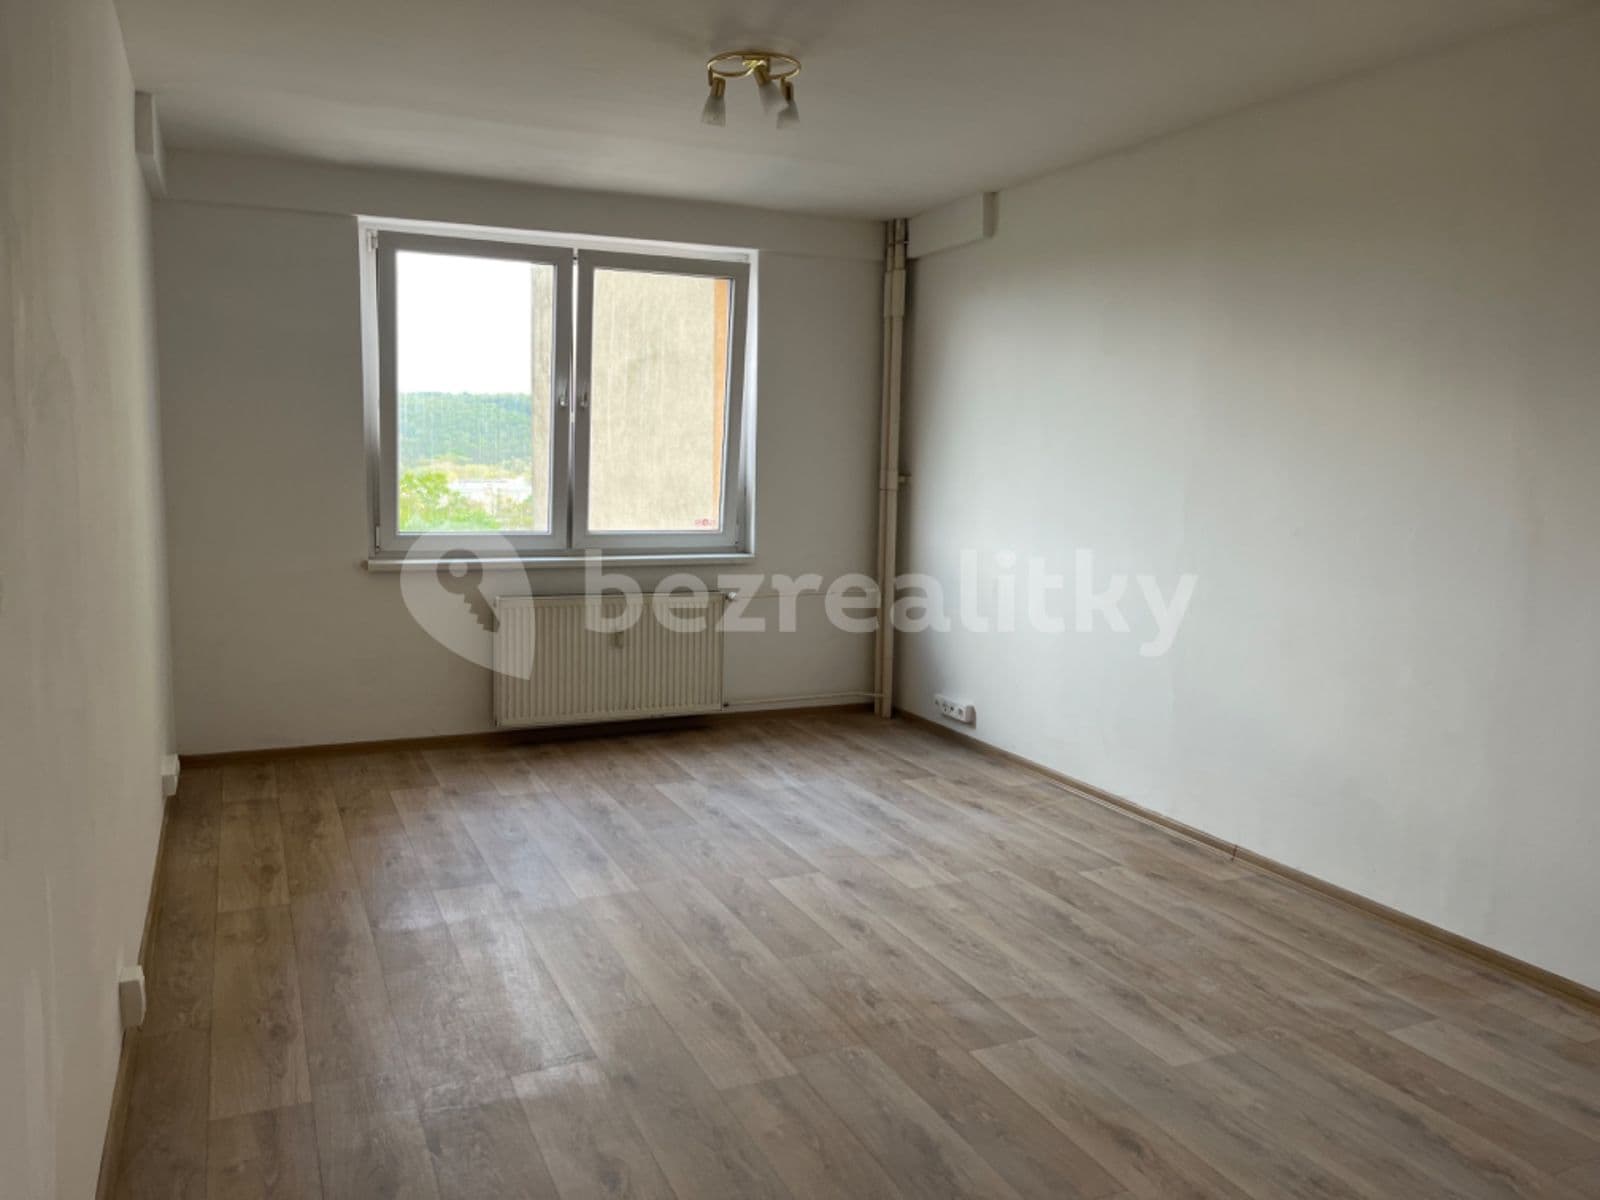 1 bedroom with open-plan kitchen flat to rent, 40 m², Štúrova, Prague, Prague